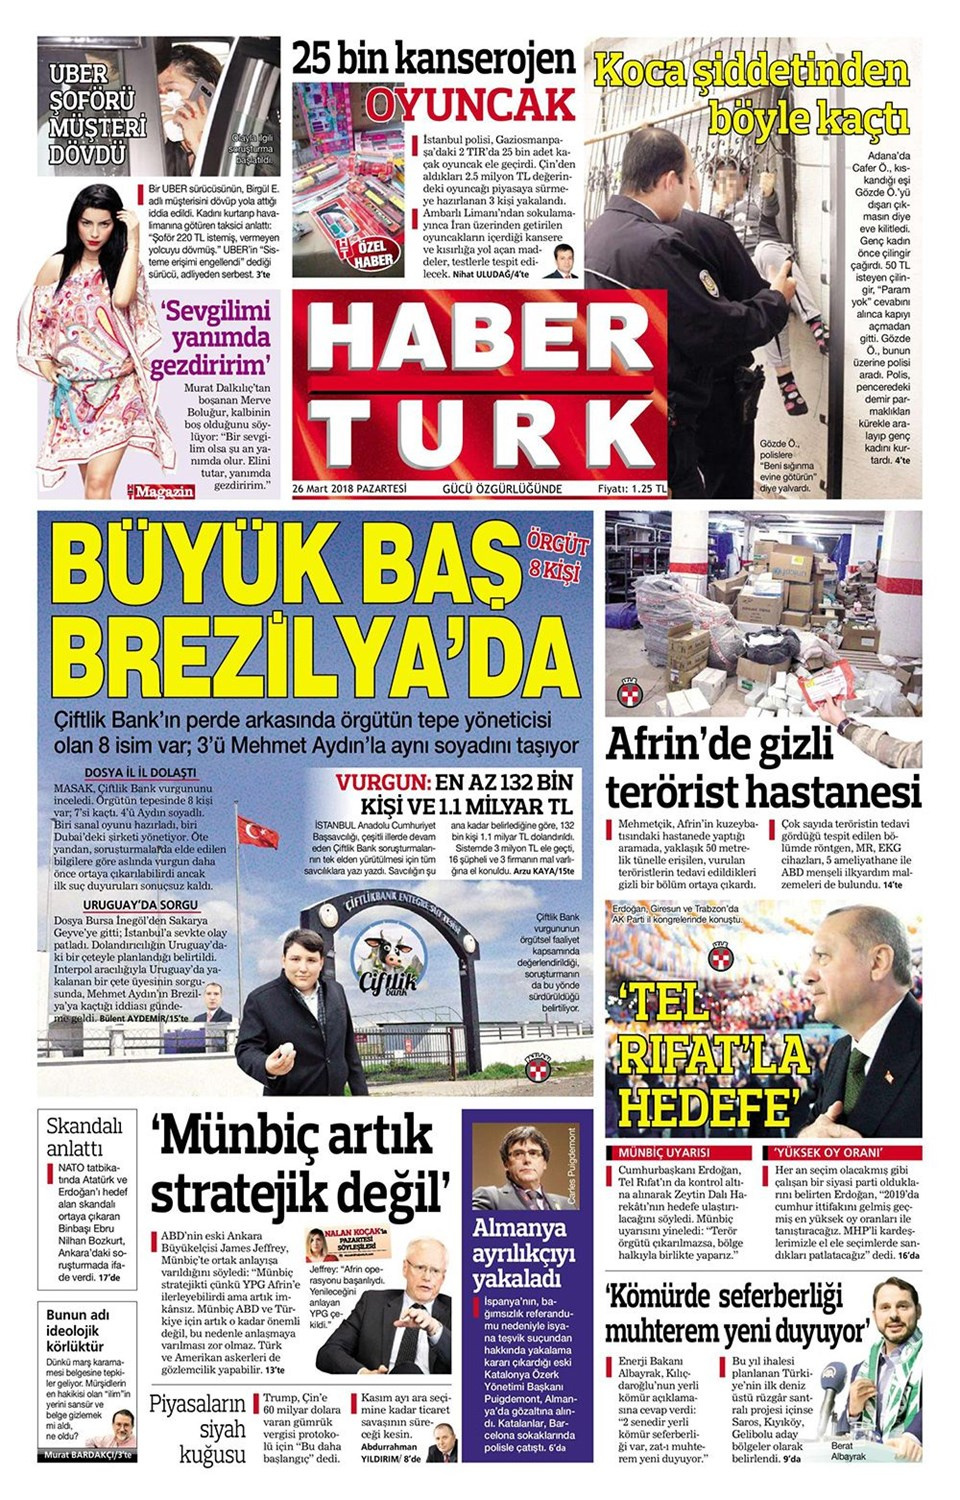 Gazete manşetleri 26 Mart 2018 Hürriyet - Sözcü - Fanatik